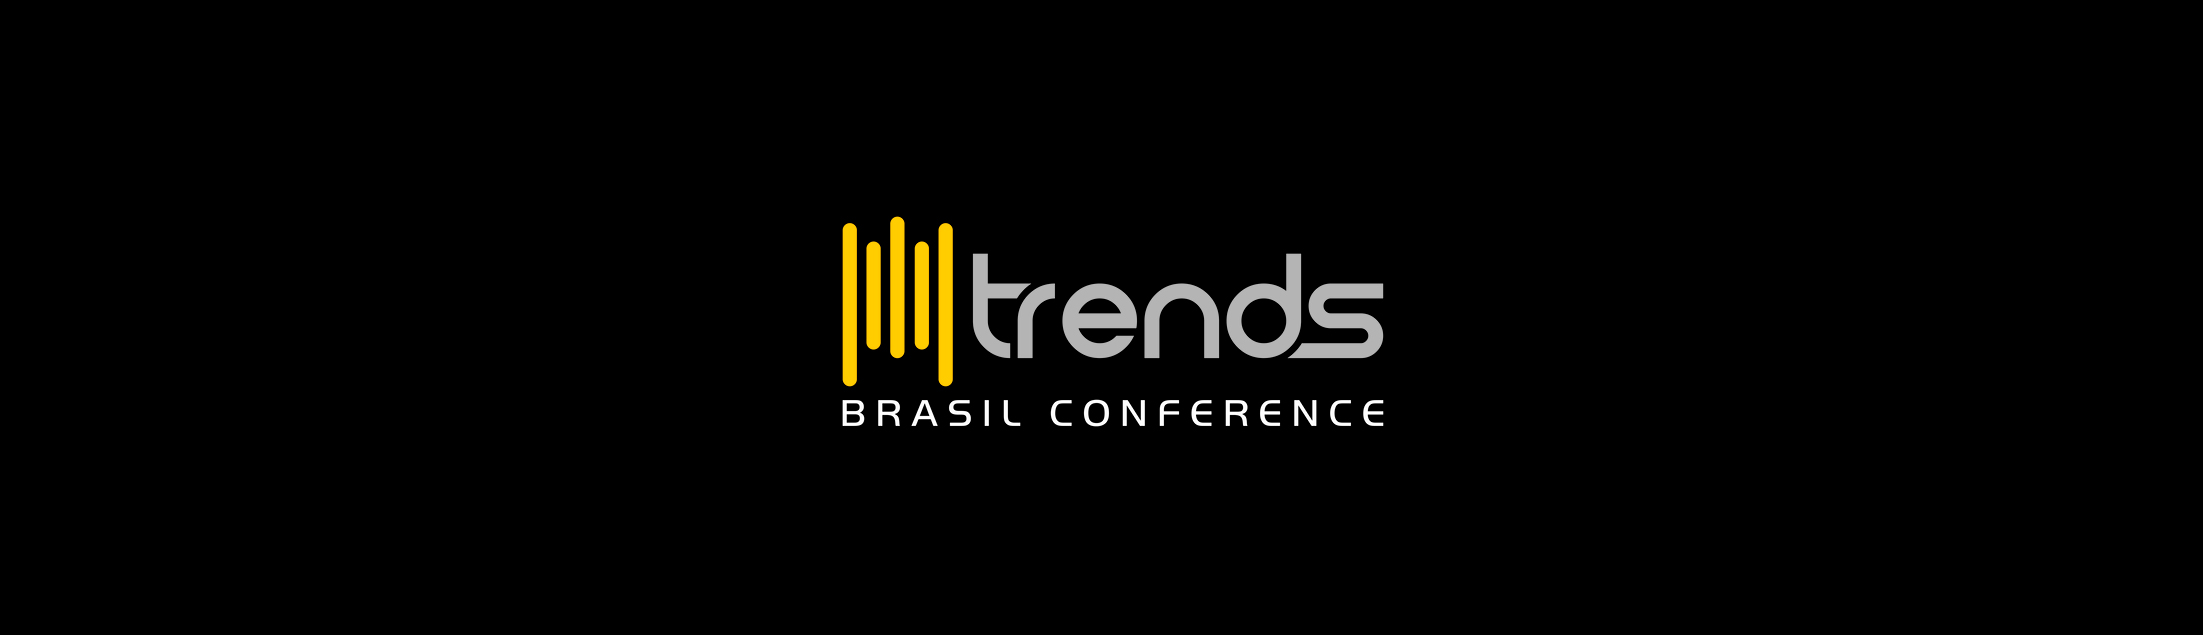 Estão abertas as inscrições para o Trends Brasil Conference 2020!